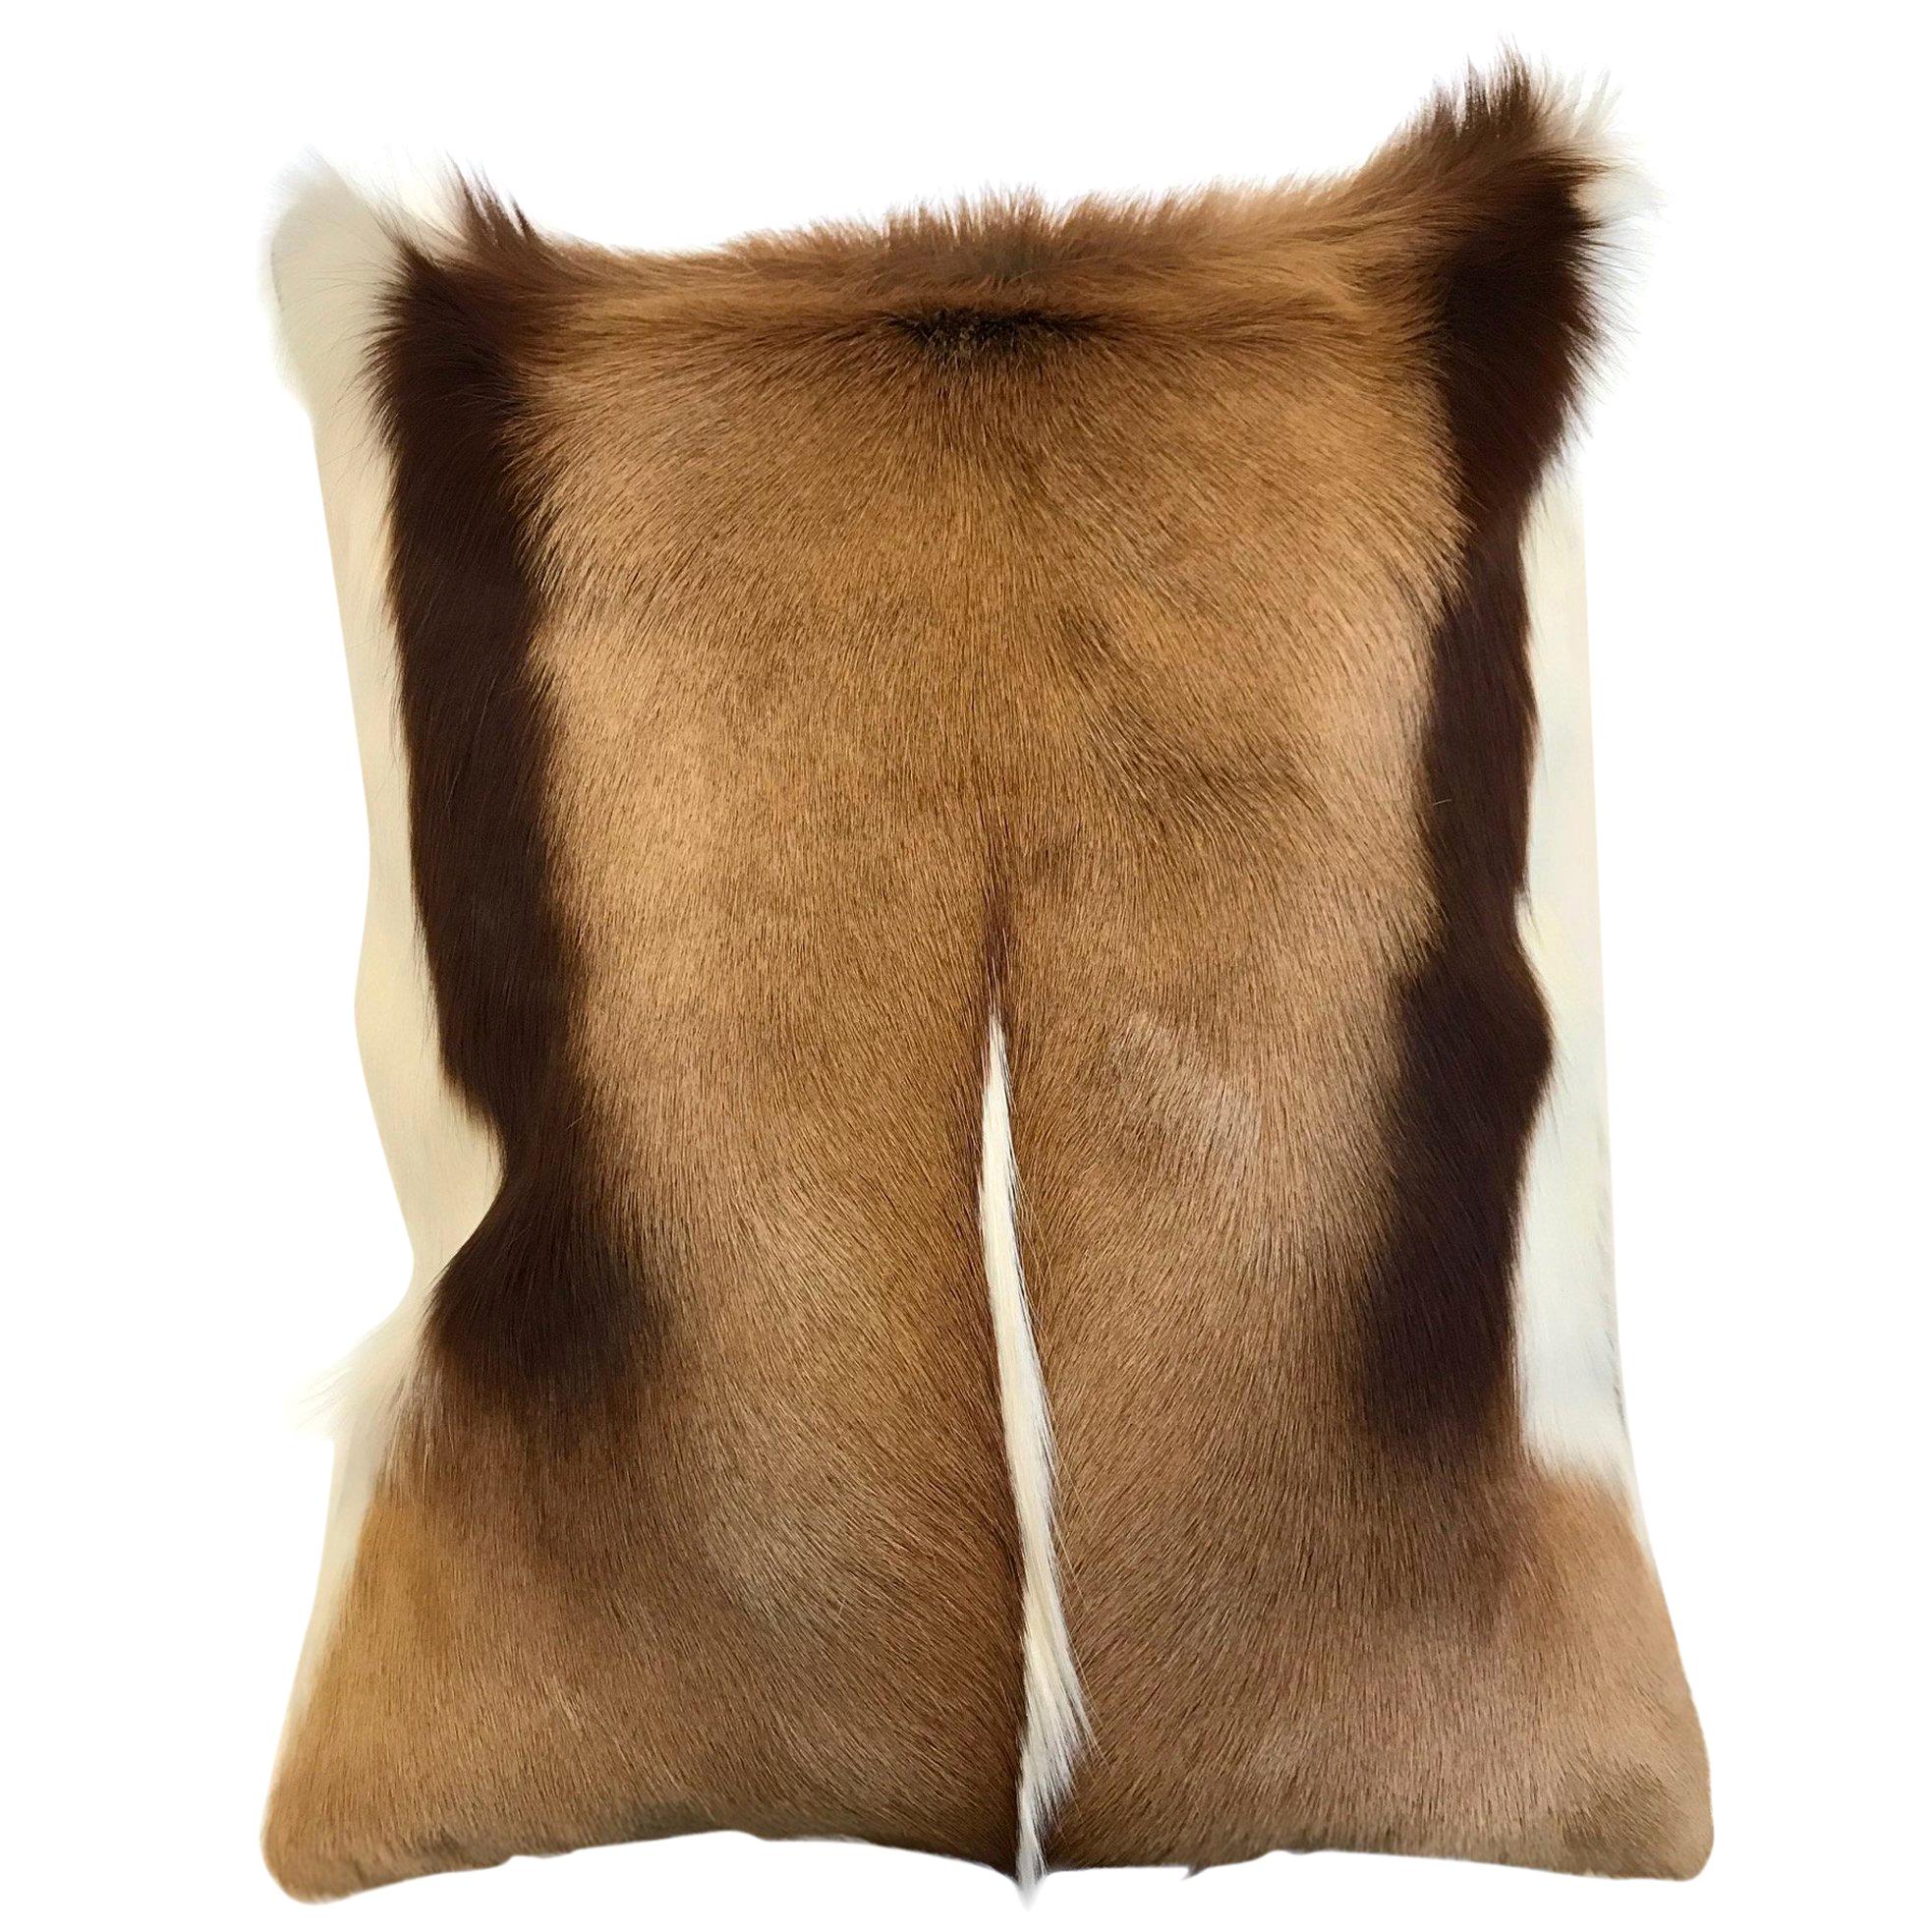 Springbok Pillow For Sale